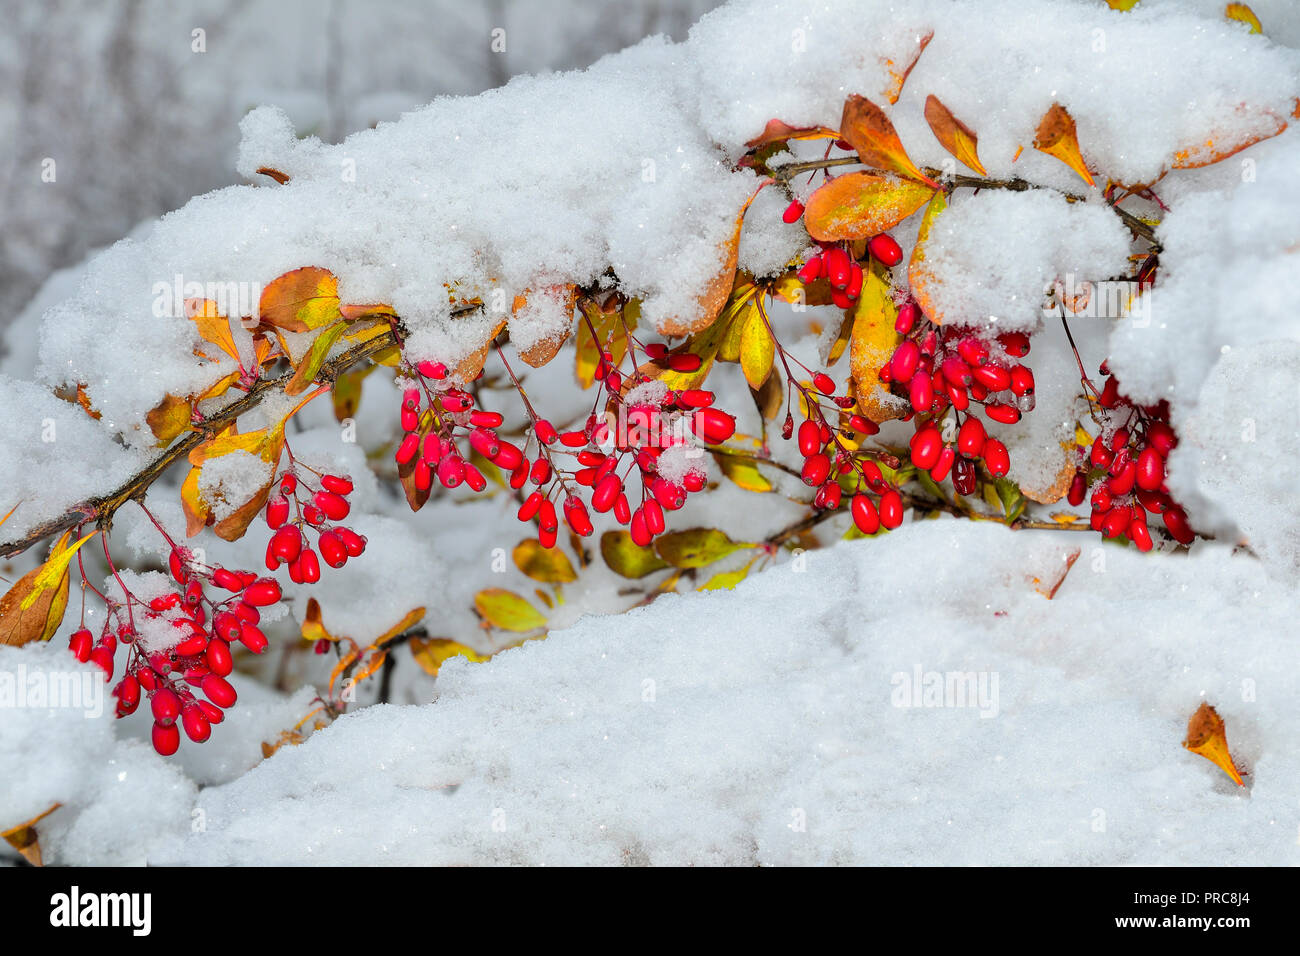 Ramo di Crespino con bacche rosse e colorate cadono le foglie prima soffici coperte di neve - decorazioni luminose del winter park close-up Foto Stock